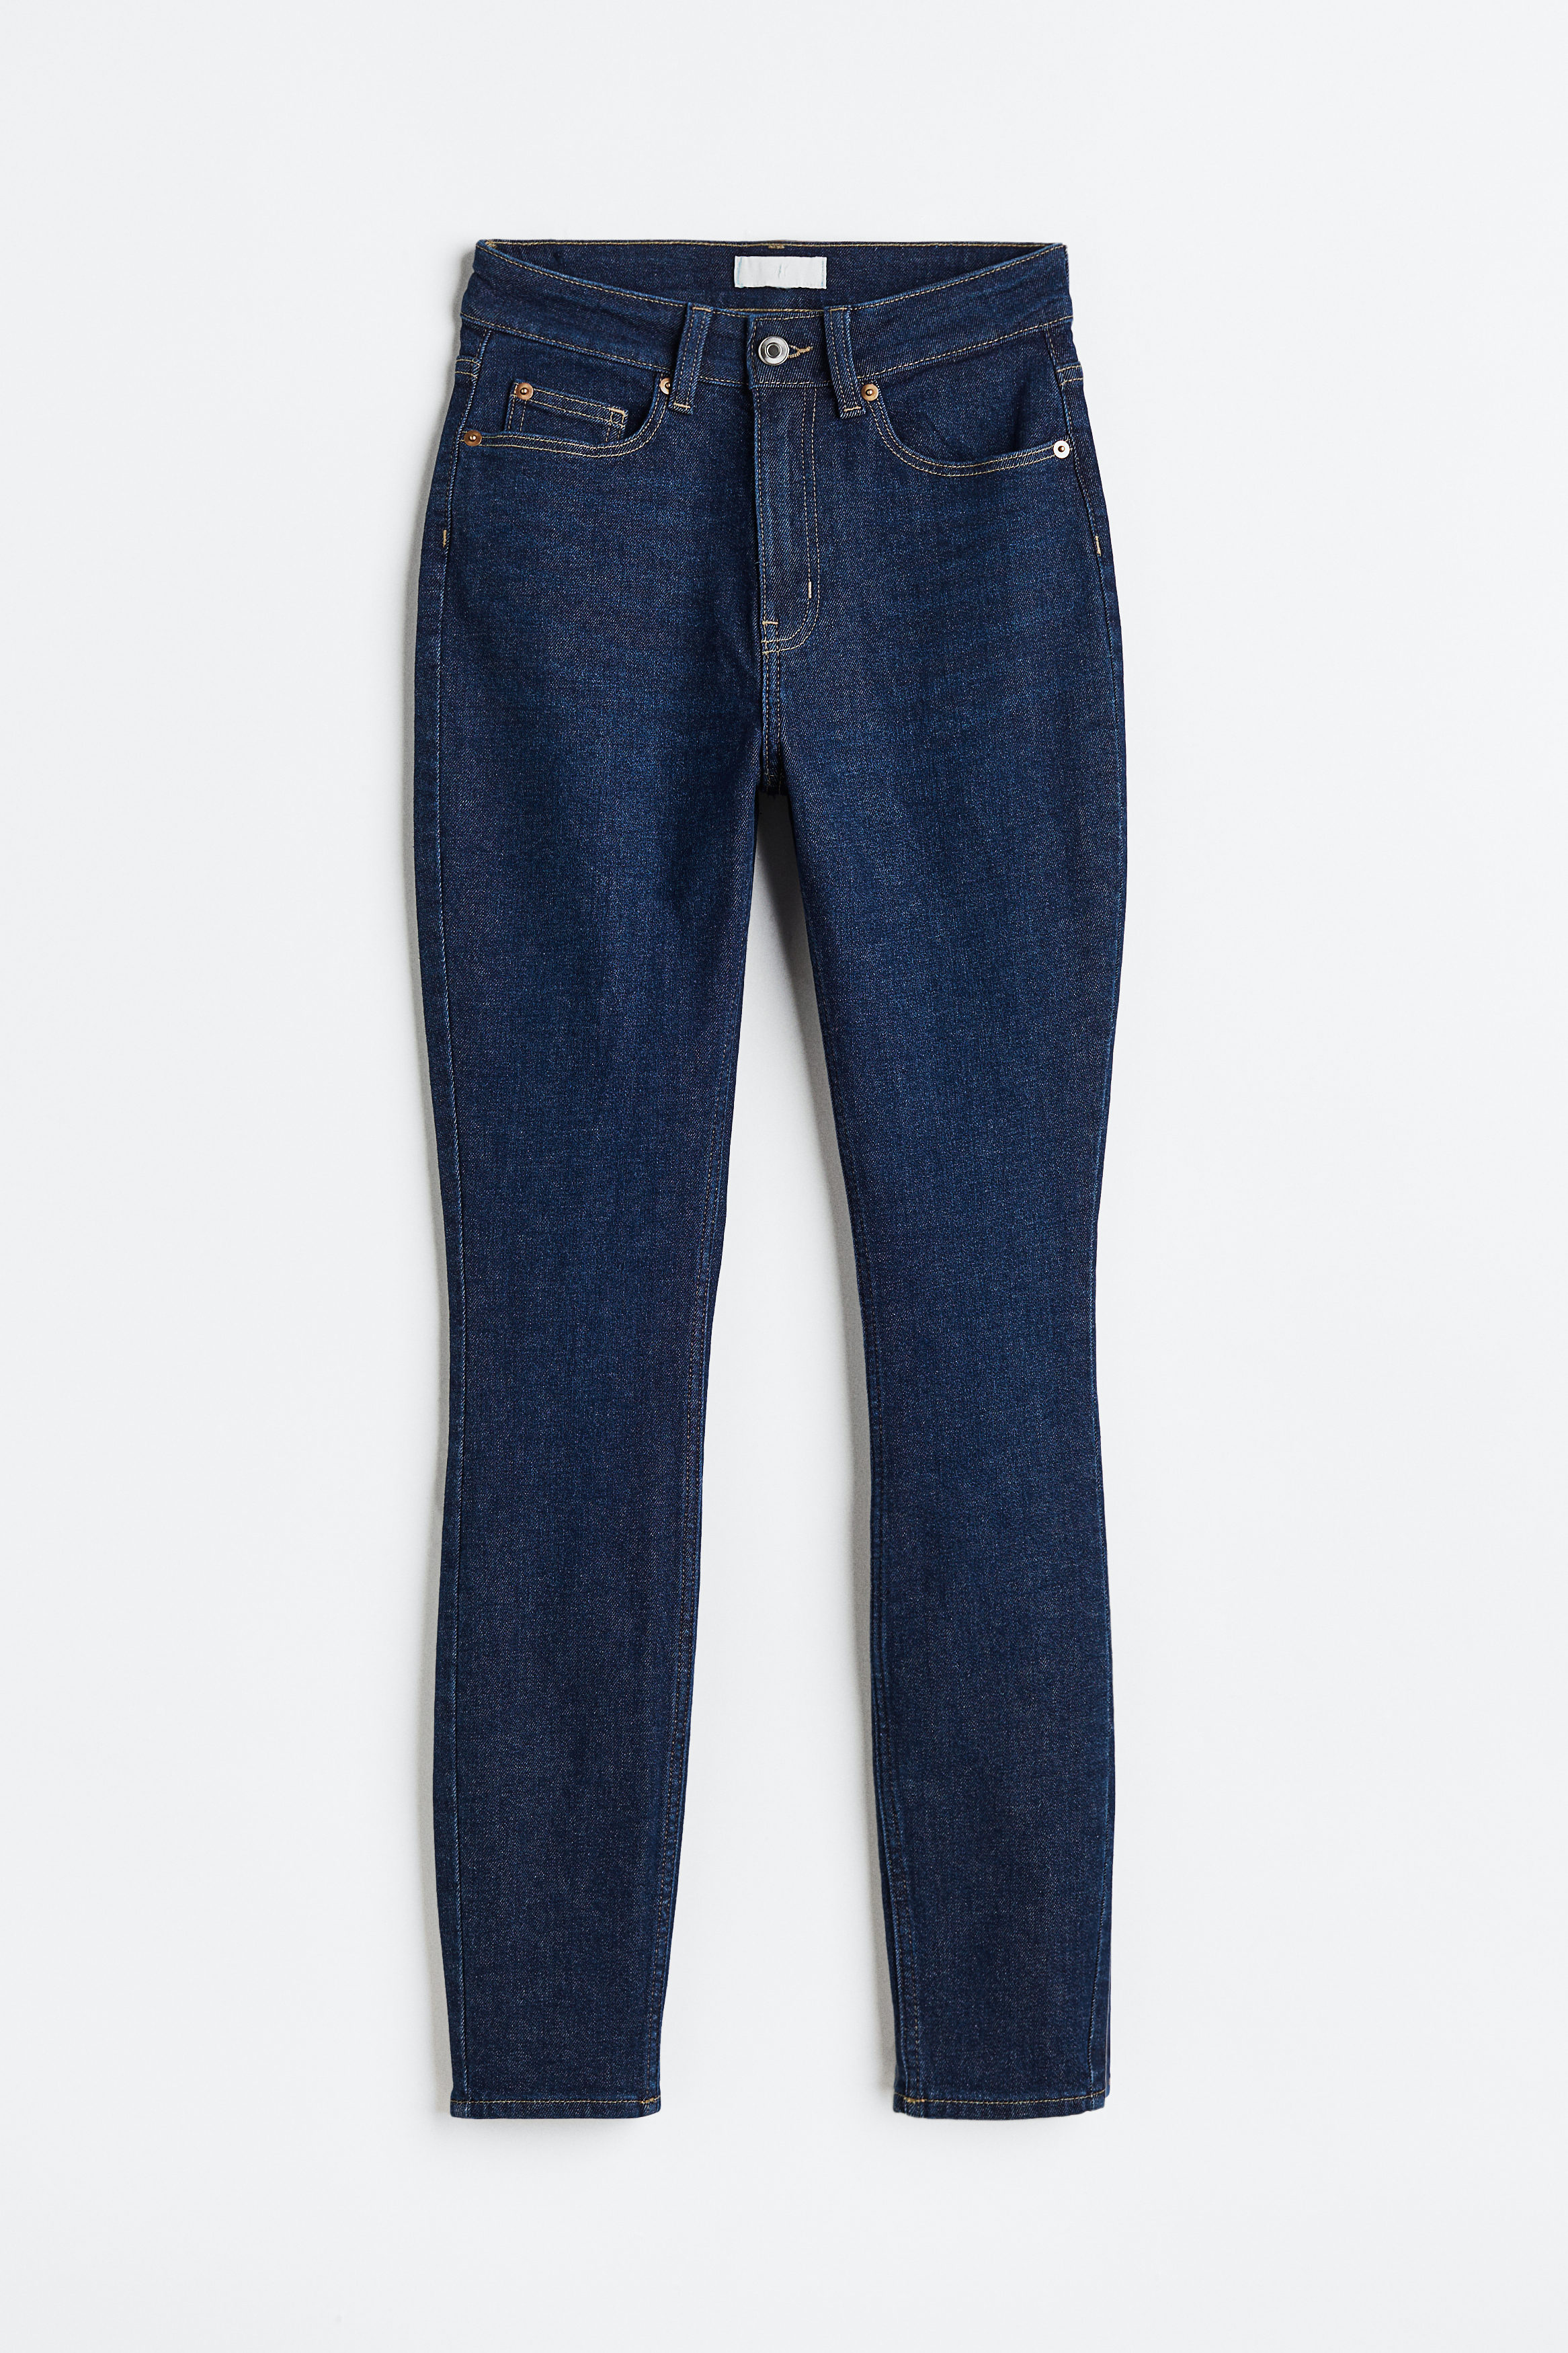 Billede af H&M Skinny High Jeans Mørk Denimblå, jeans. Farve: Dark denim blue I størrelse 32